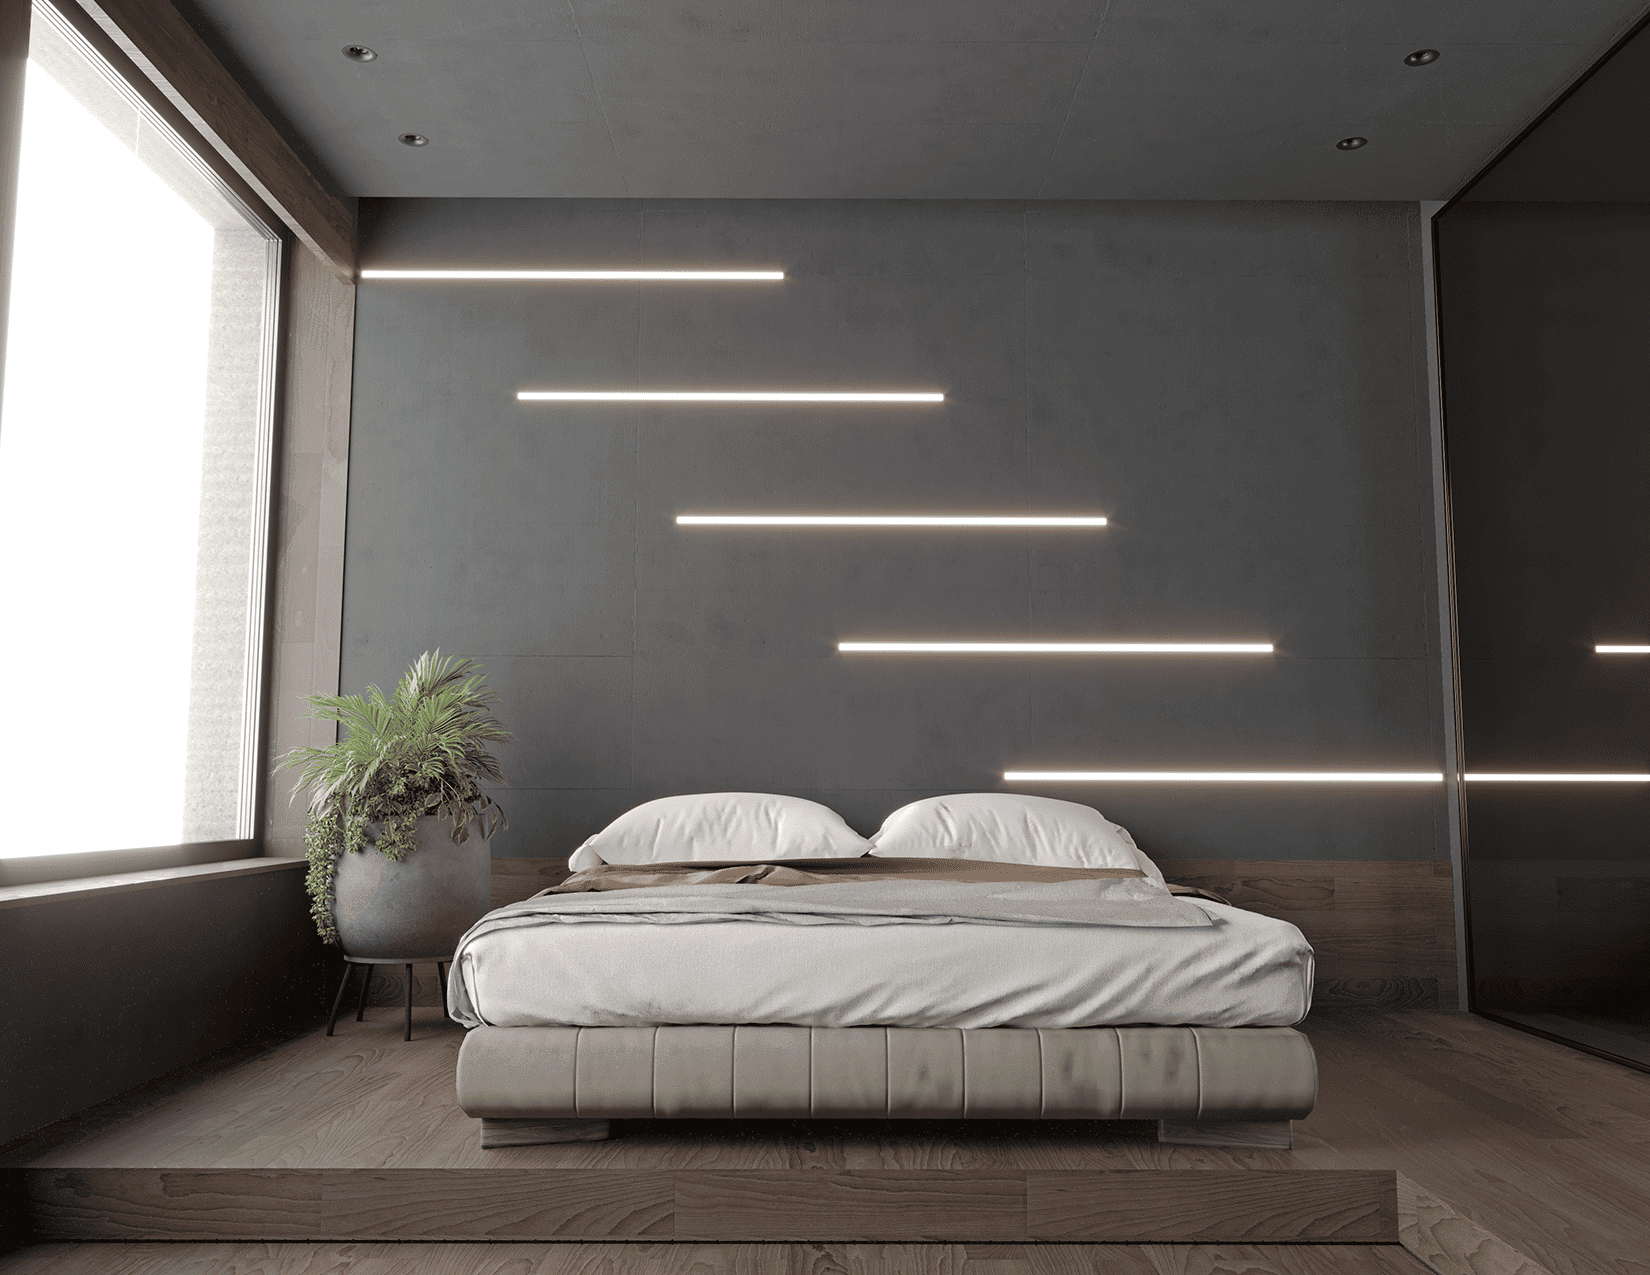 Bedroom recessed lighting